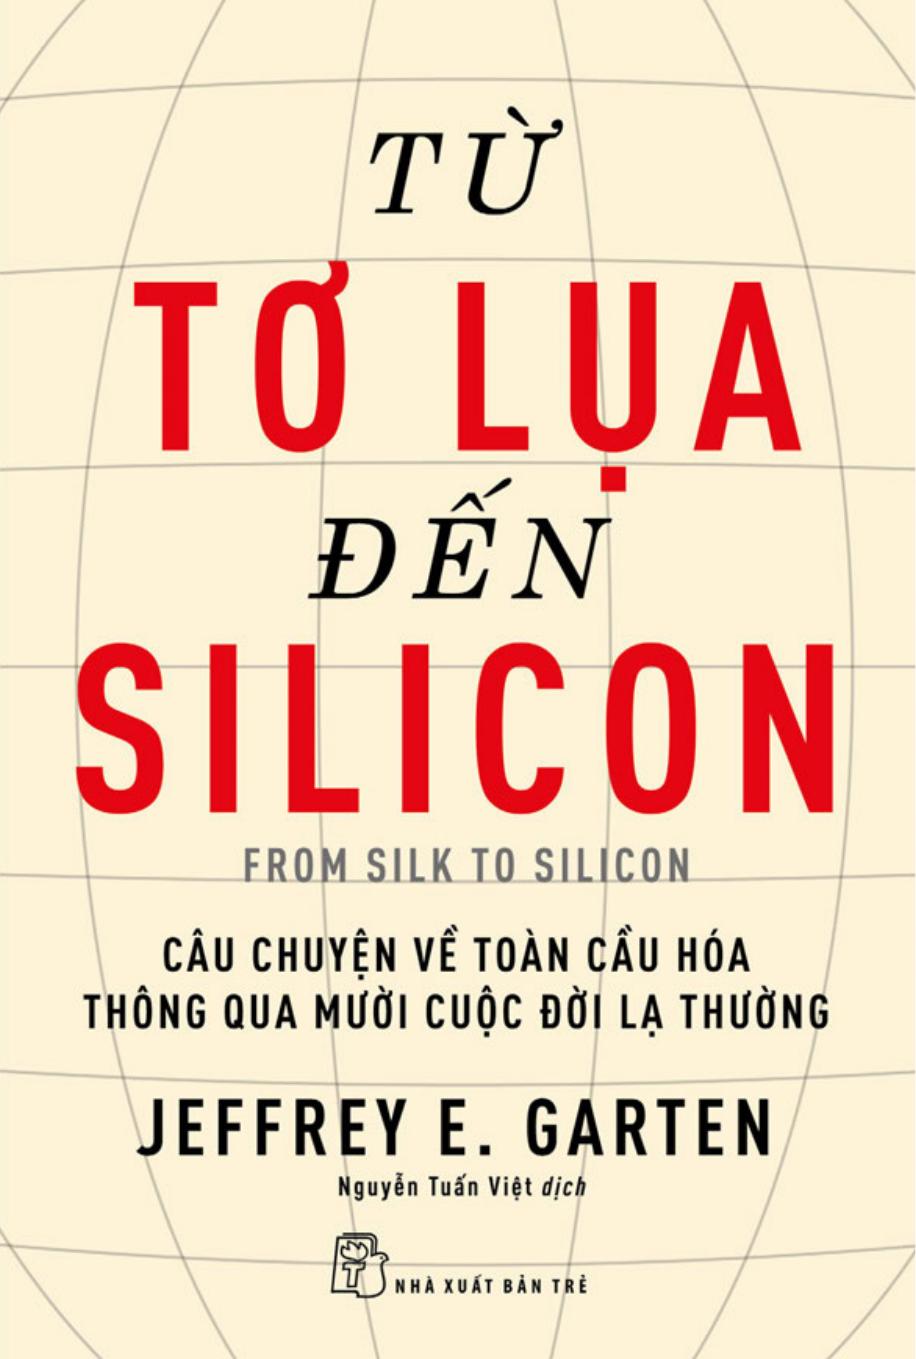 Từ Tơ Lụa Đến Silicon - Câu Chuyện Về Toàn Cầu Hóa Thông Qua 10 Cuộc Đời Lạ Thường - Jeffrey E. Garten